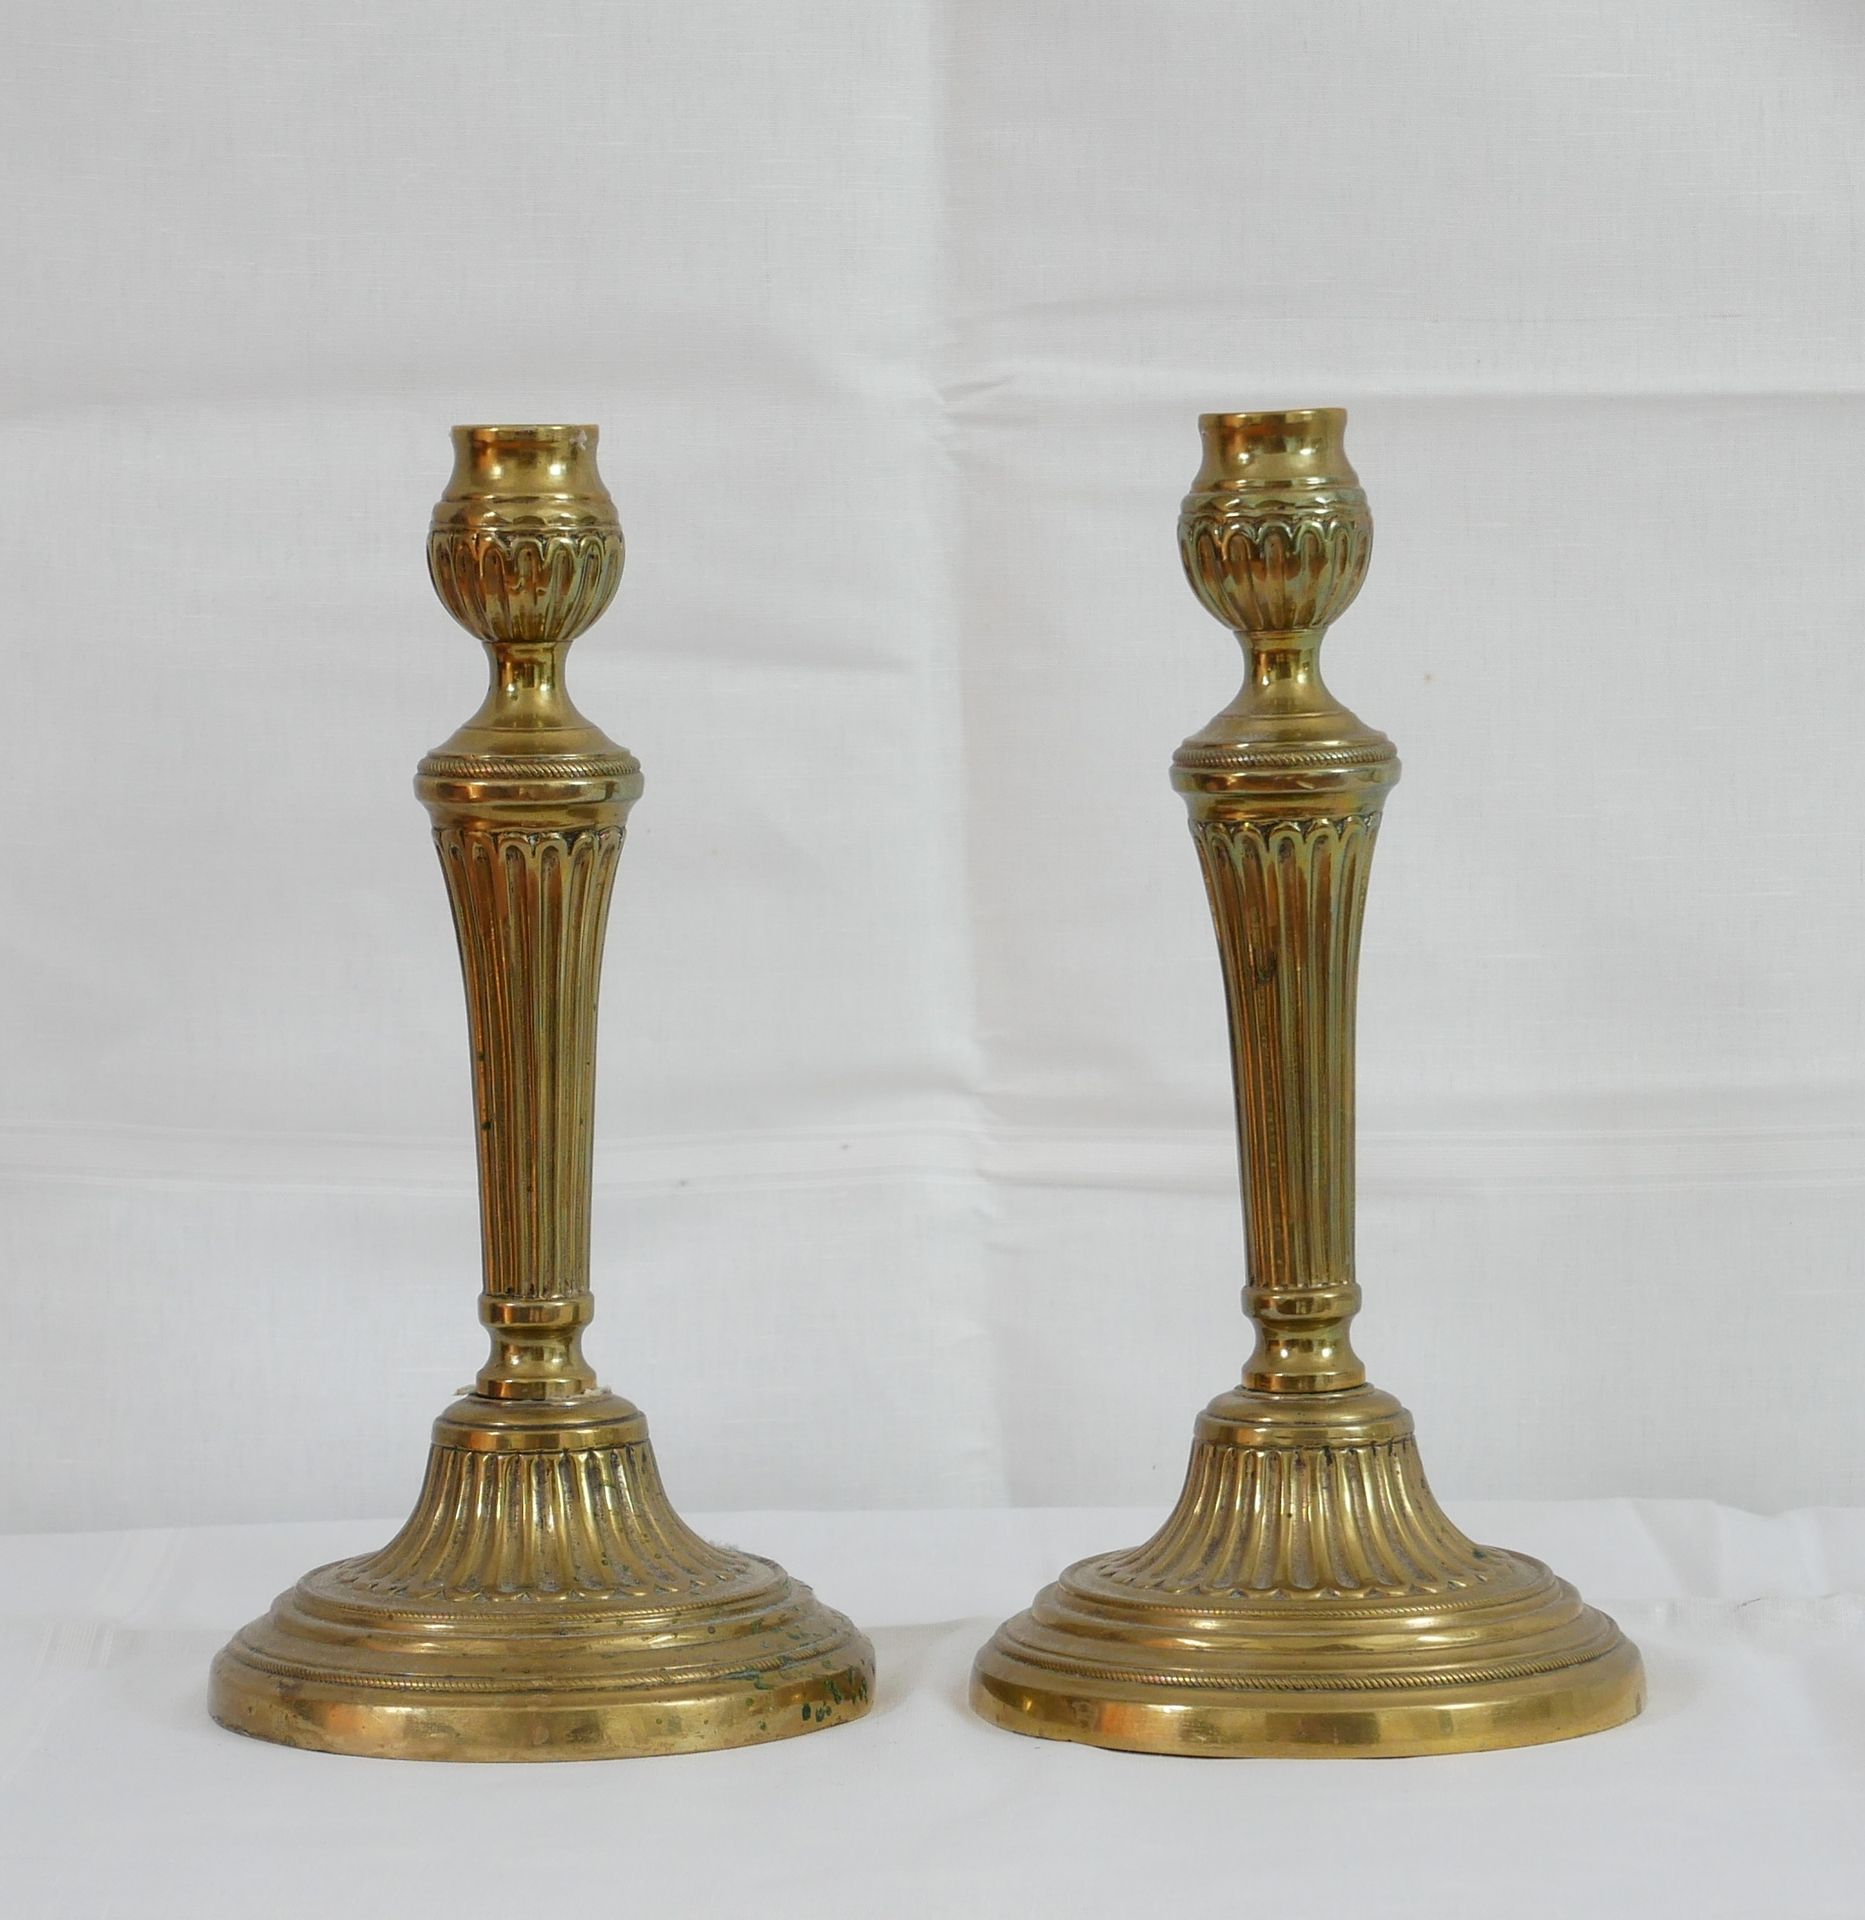 Null Paar Kerzenhalter aus godronierter Bronze im Stil Louis XVI.

H: 27 cm.